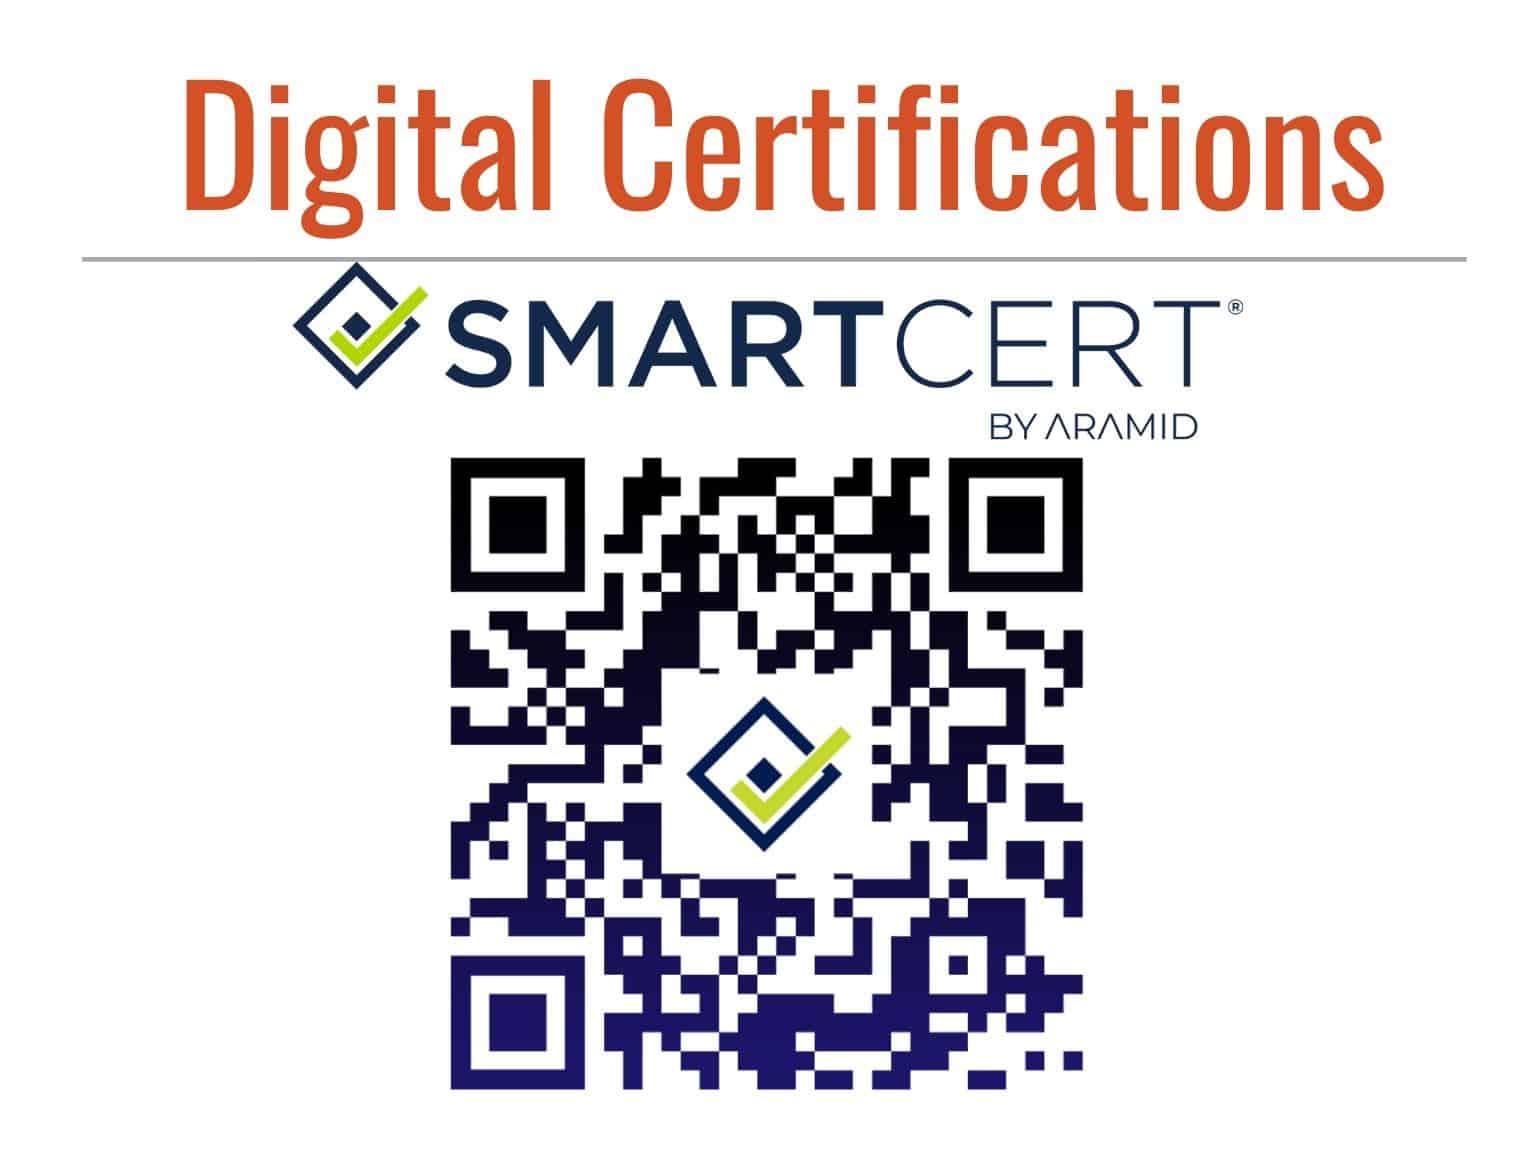 SmartCerts, Fastener Certifications